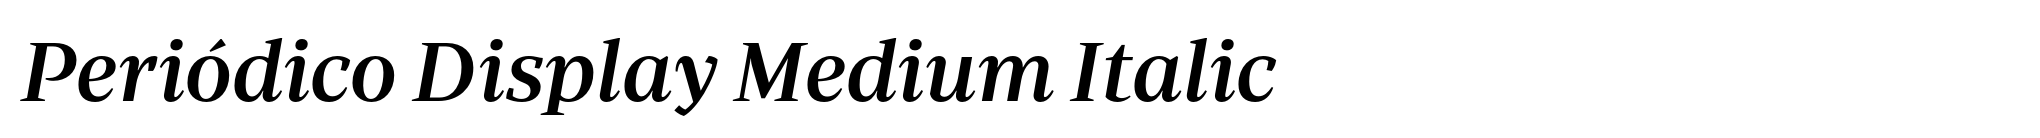 Periódico Display Medium Italic image